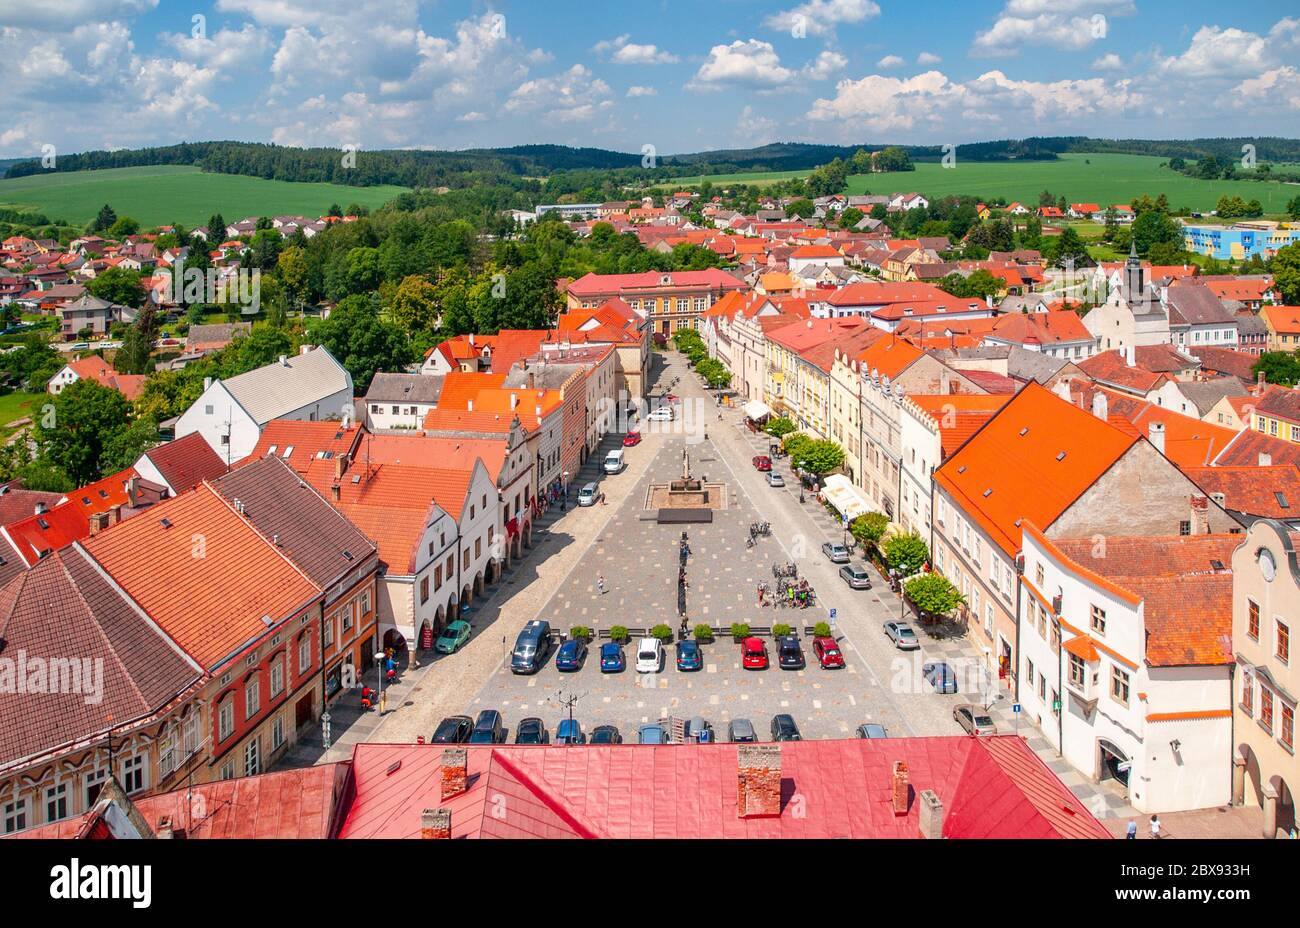 Luftaufnahme des Peace Town Square vom Glockenturm in Slavonice, Tschechien, Kanada. Stockfoto